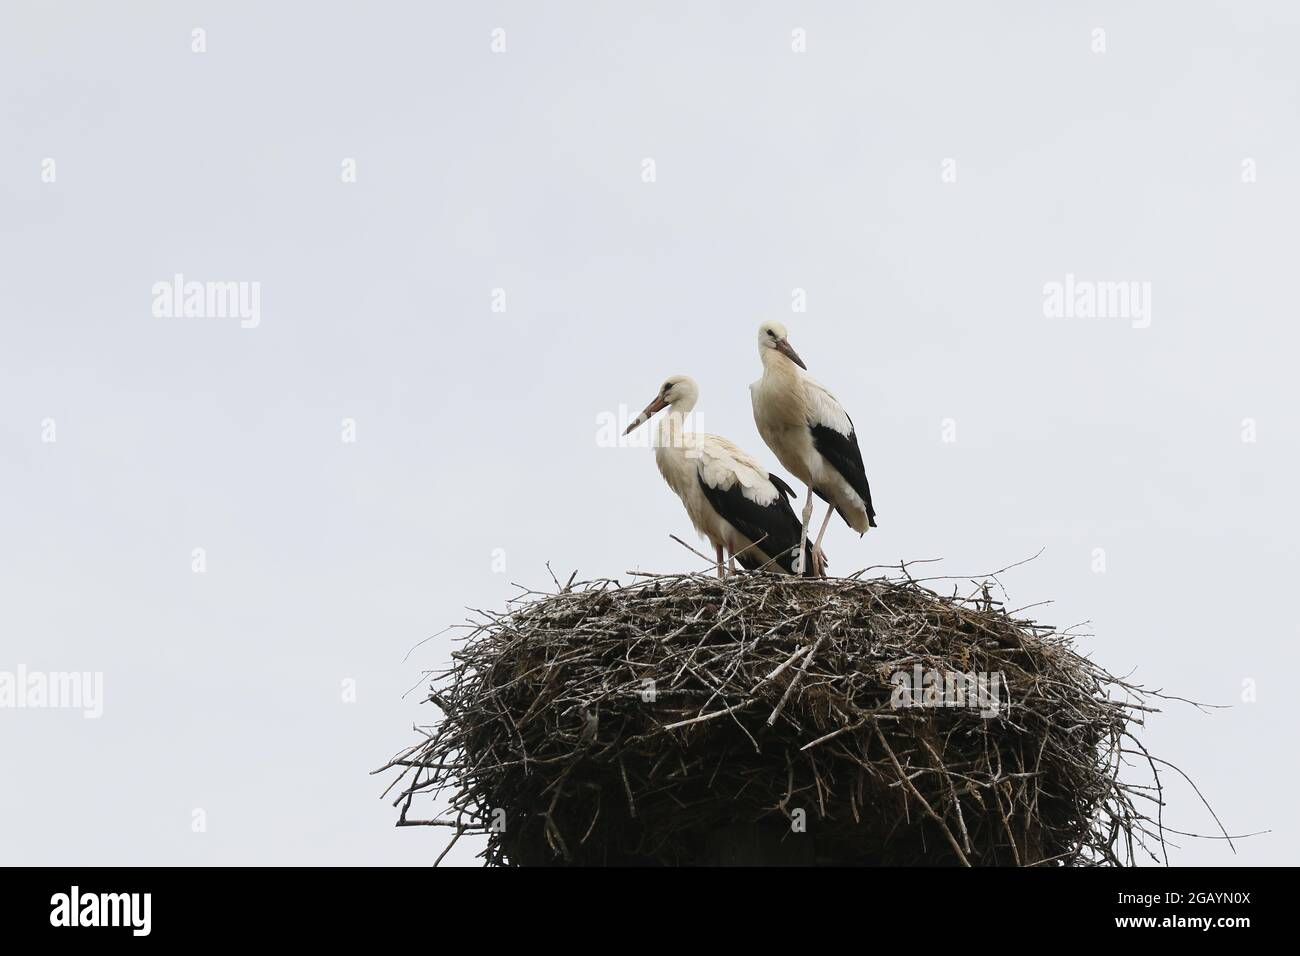 08/01/2021, Germany, Brandenburg, Ihlow ( Oberbarnim). Young storks in stork nest. Stock Photo